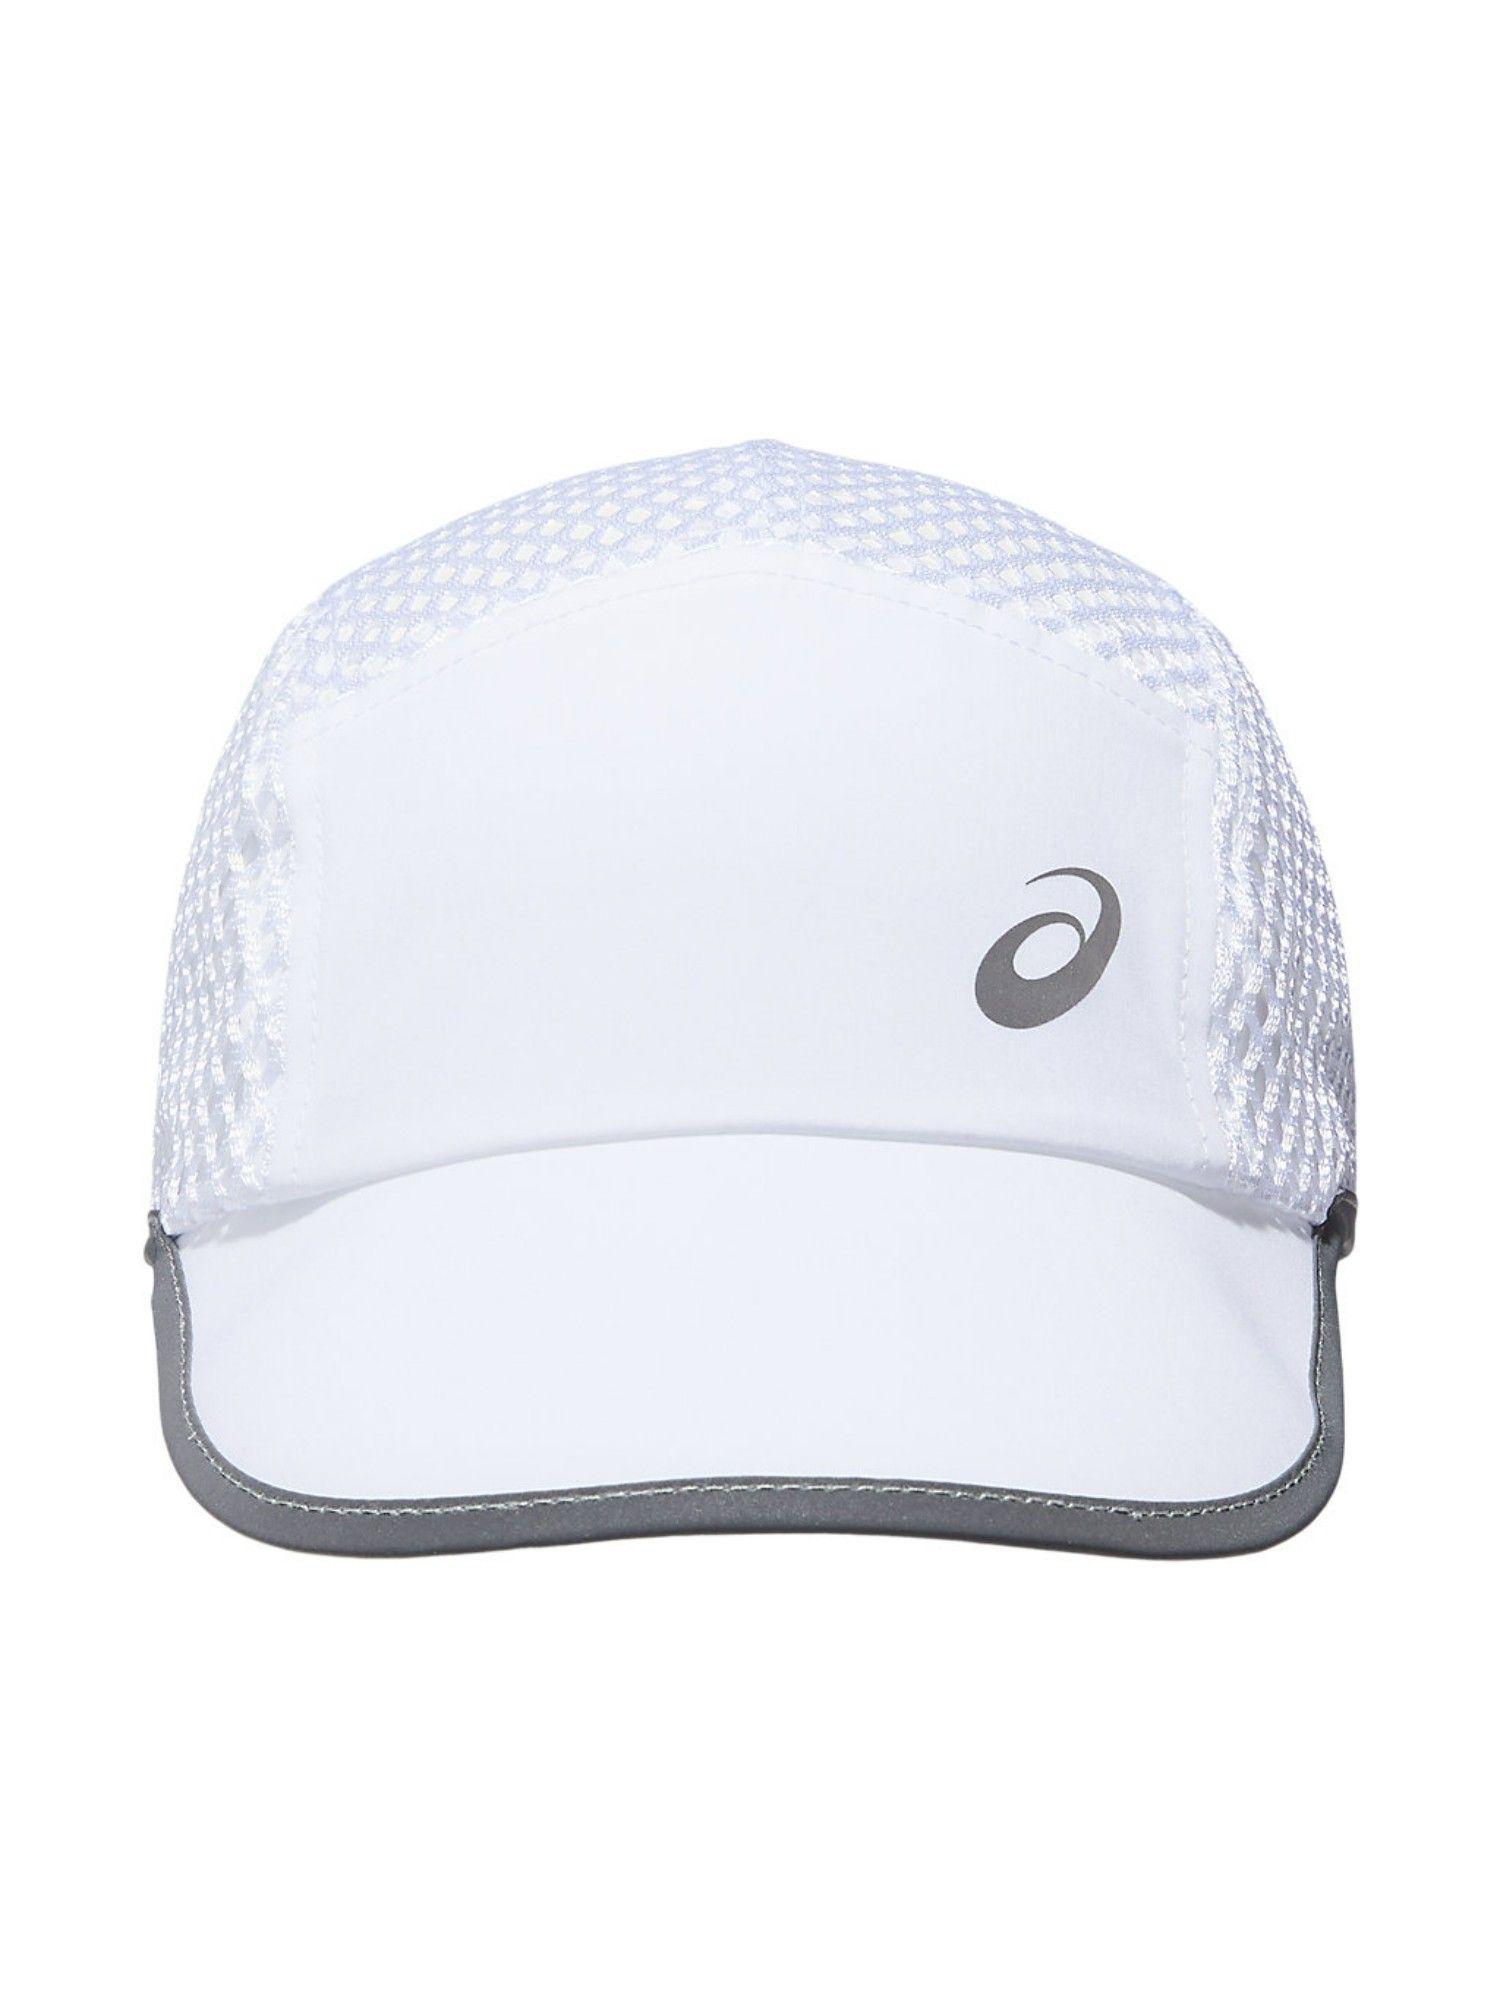 mesh white unisex cap